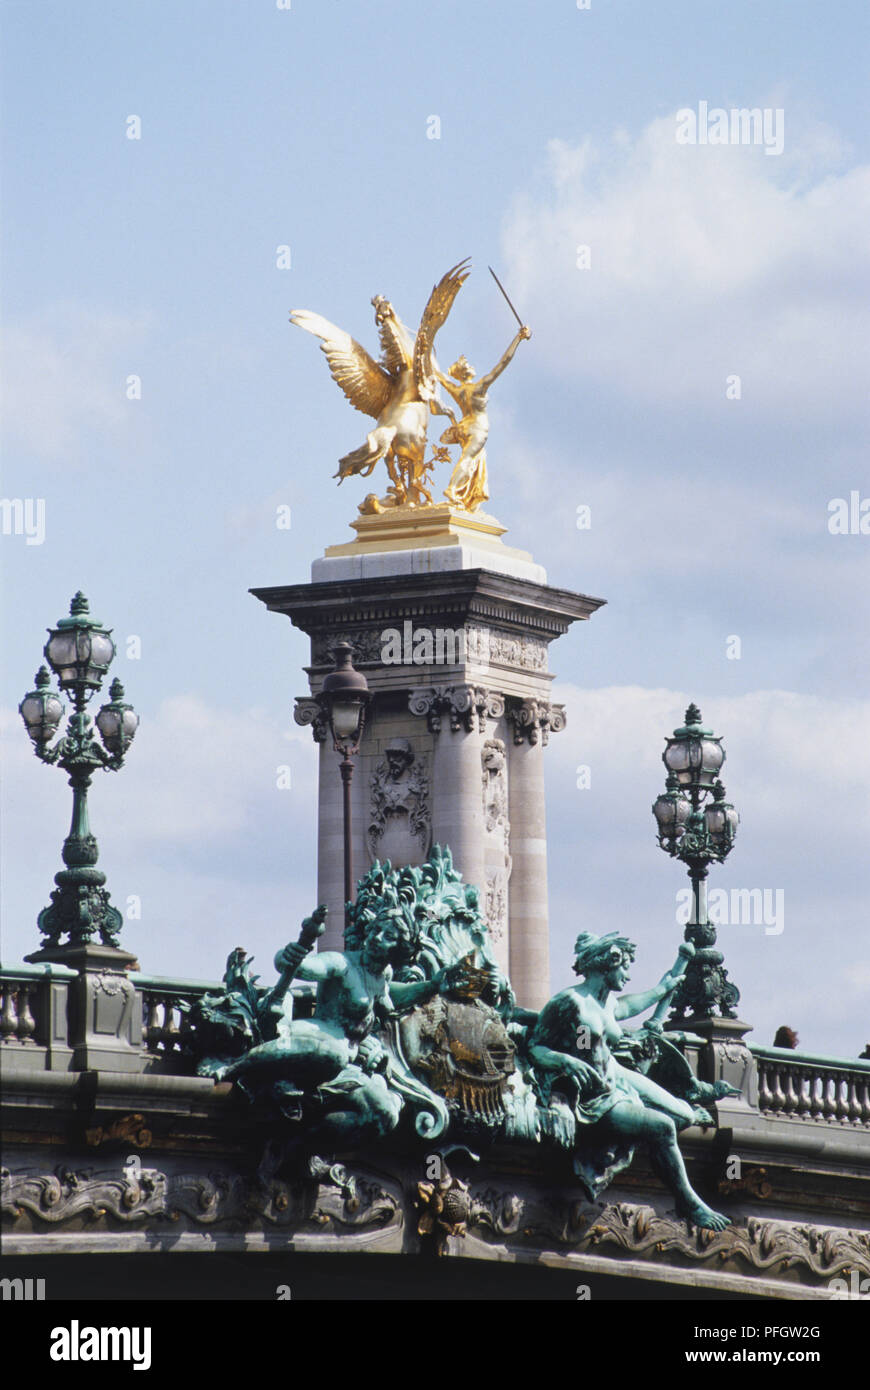 Francia, Paris, Pont Alexander III con una columna de piedra decorativa rodamiento grabados y un querubín soplando un cuerno dorado, puente con bronce y las estatuas doradas. Foto de stock